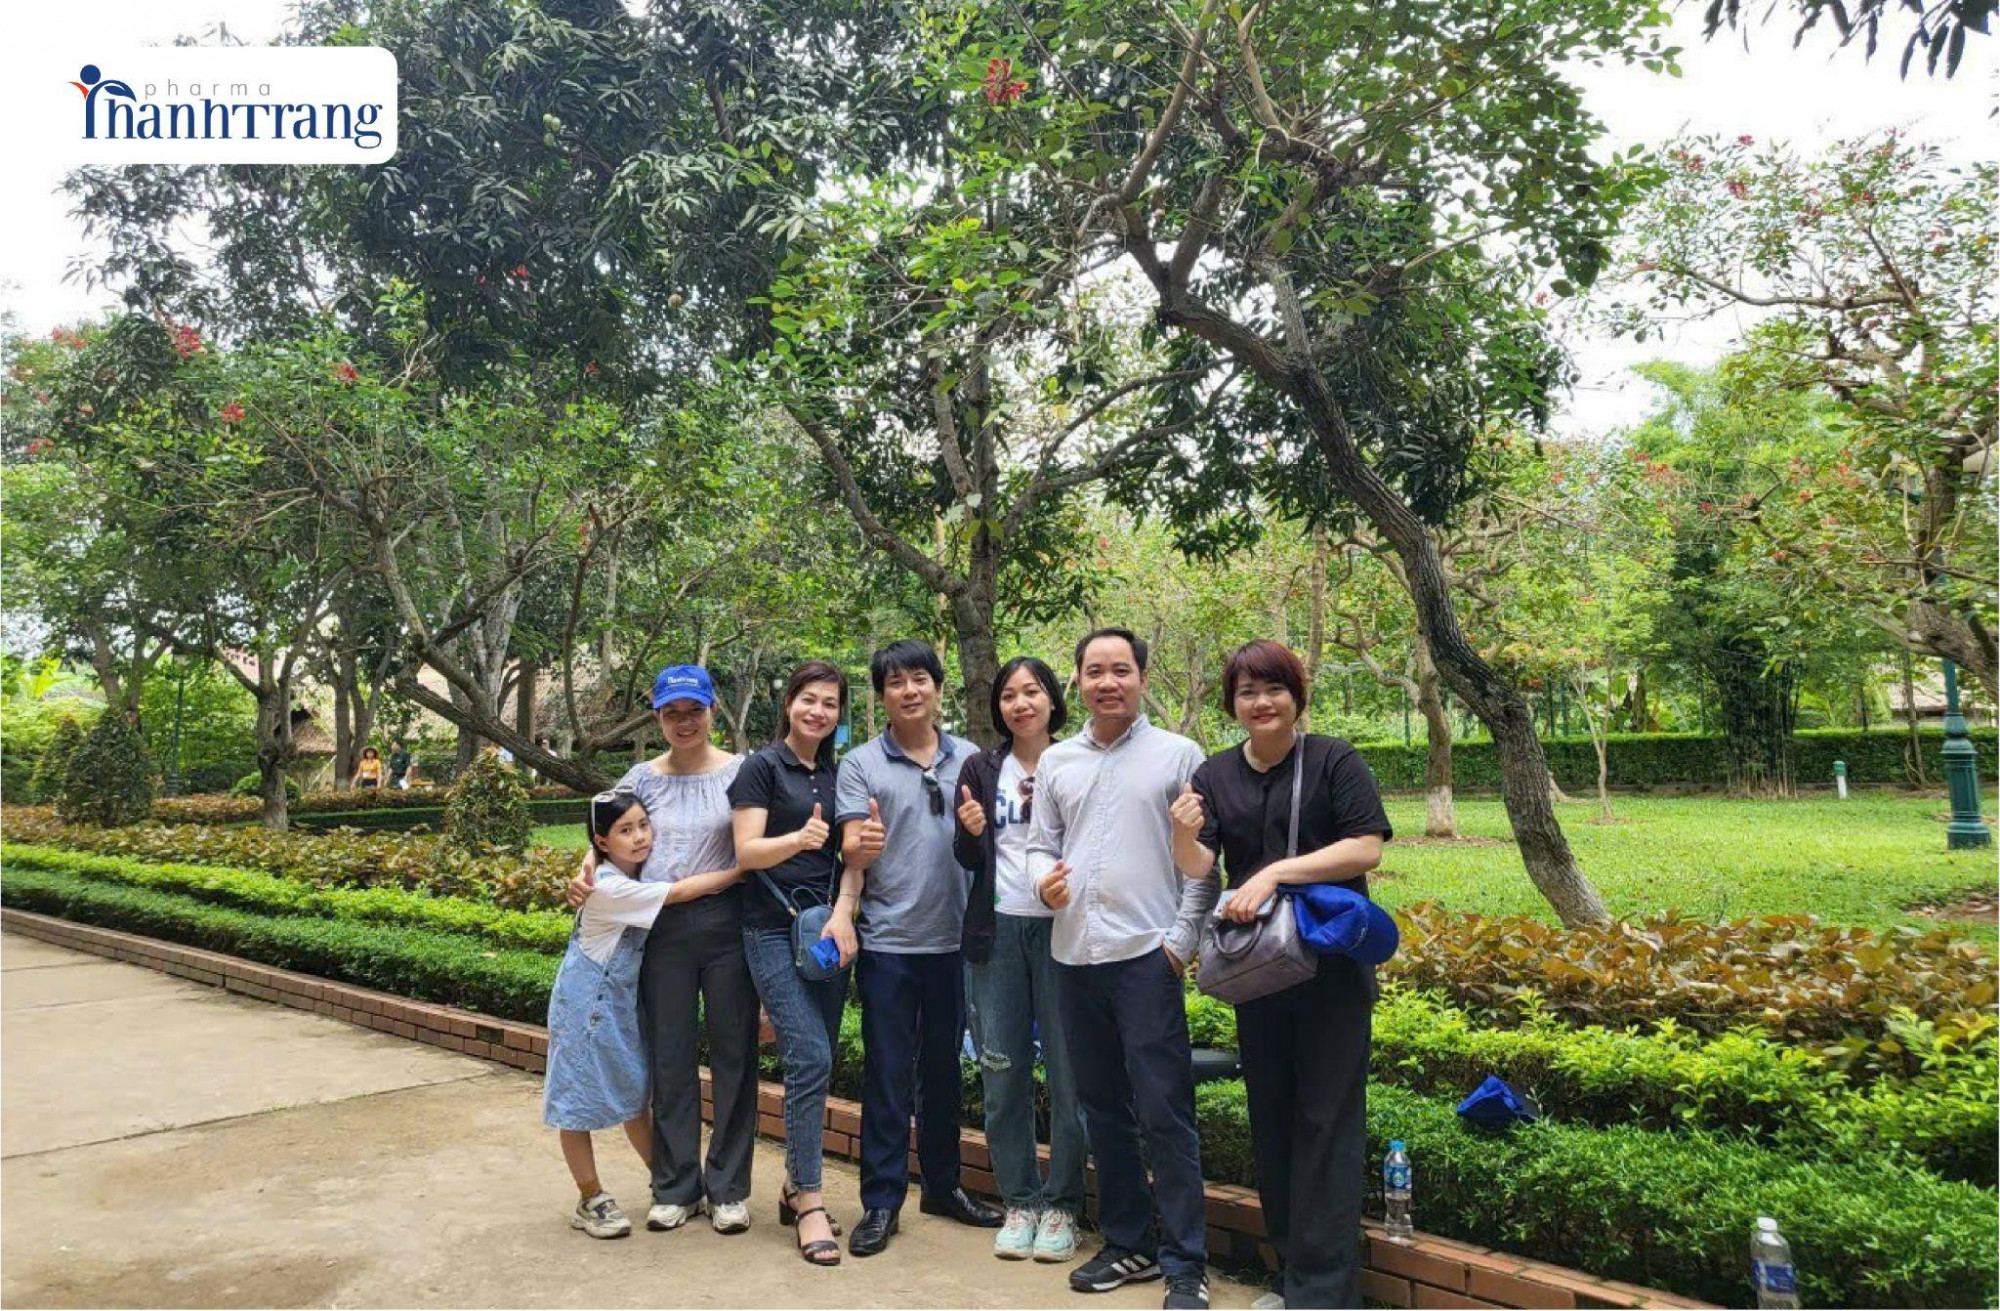 Chuyến thăm quê Bác mang tới nhiều cảm xúc cho nhân viên Dược mỹ phẩm Thanh Trang - Ảnh: Dược mỹ phẩm Thanh Trang